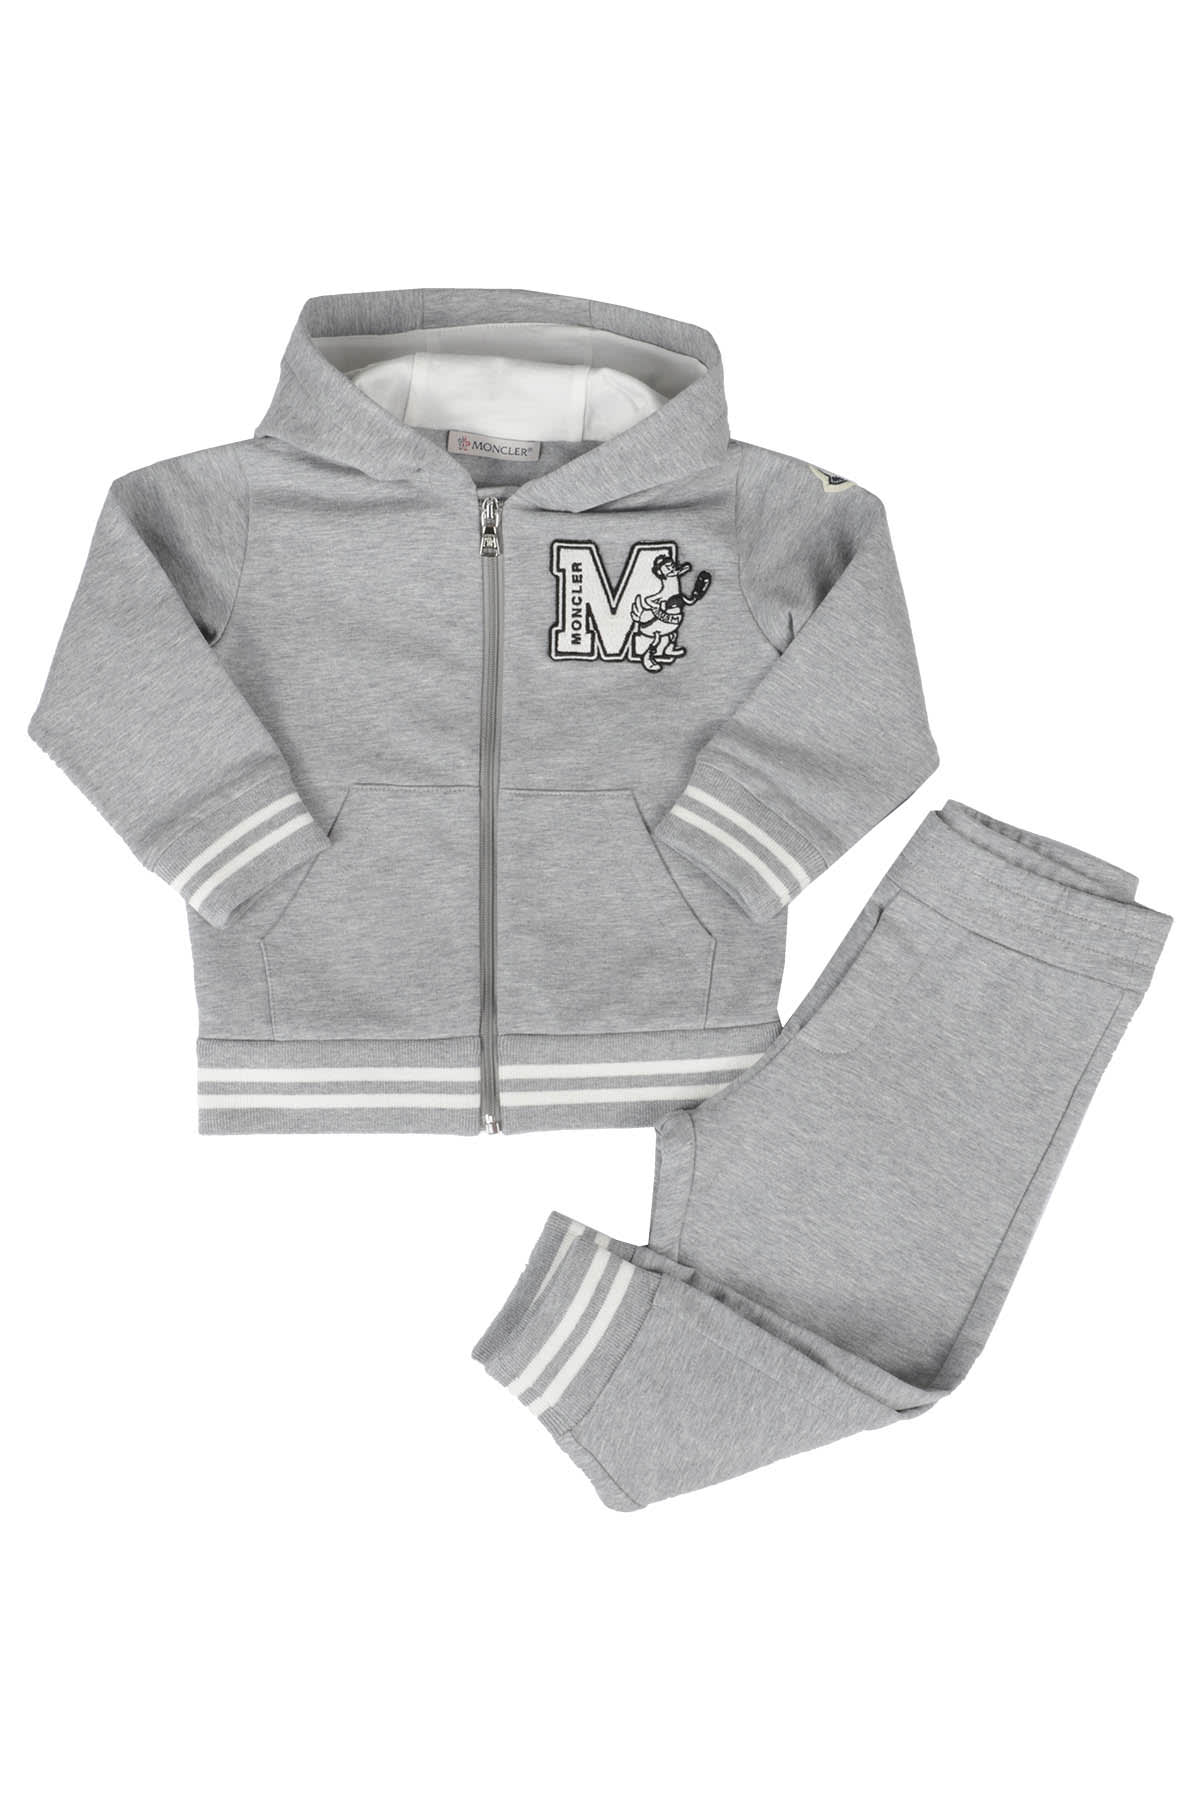 Moncler Kids' Knitwear In Grey